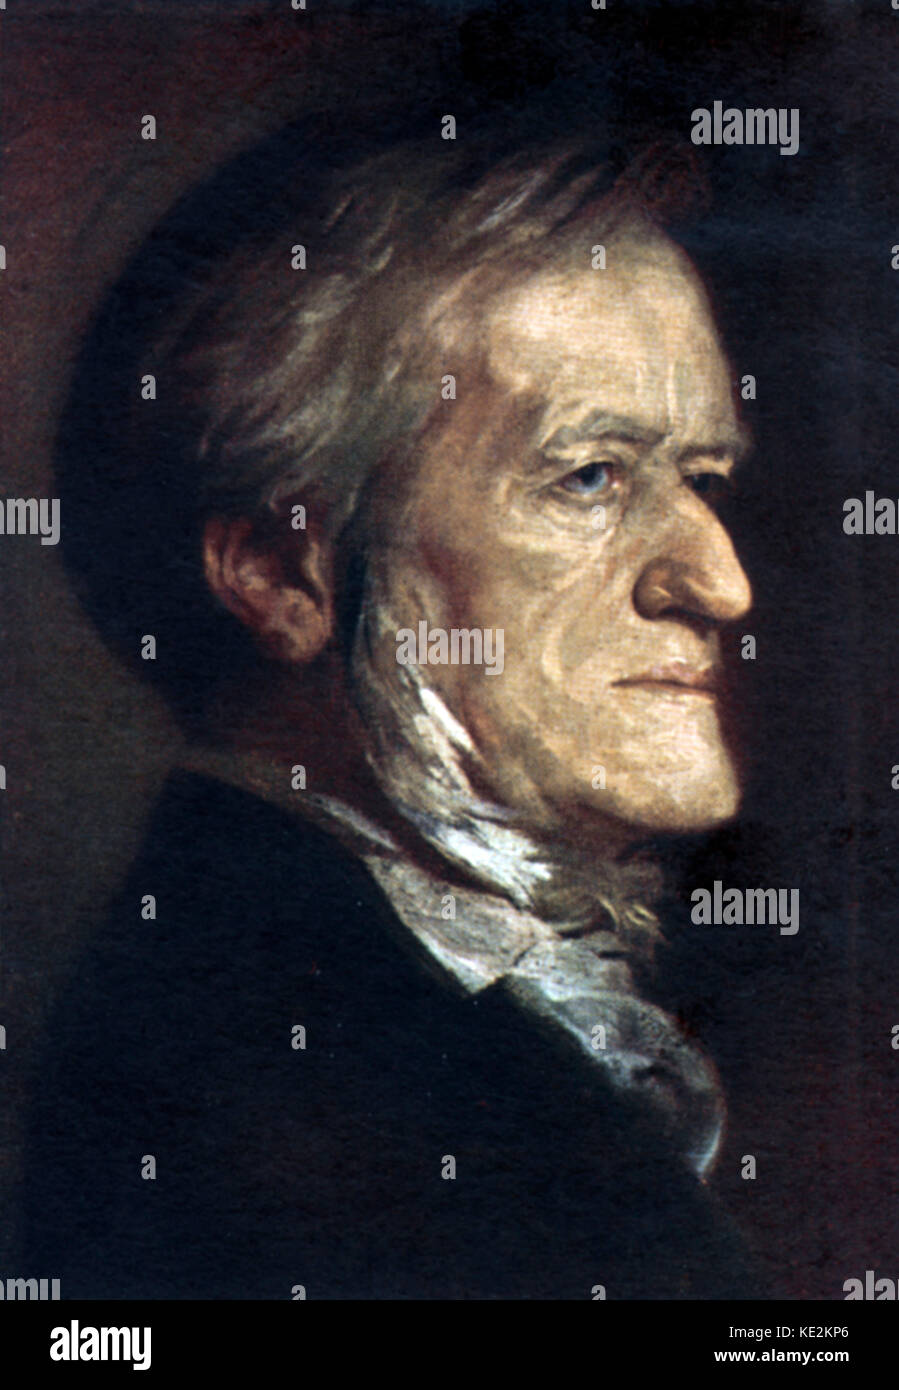 Richard Wagner portrait. Dipinto di H. Torggler. Compositore tedesco & autore, 22 maggio 1813 - 13 febbraio 1883. Foto Stock